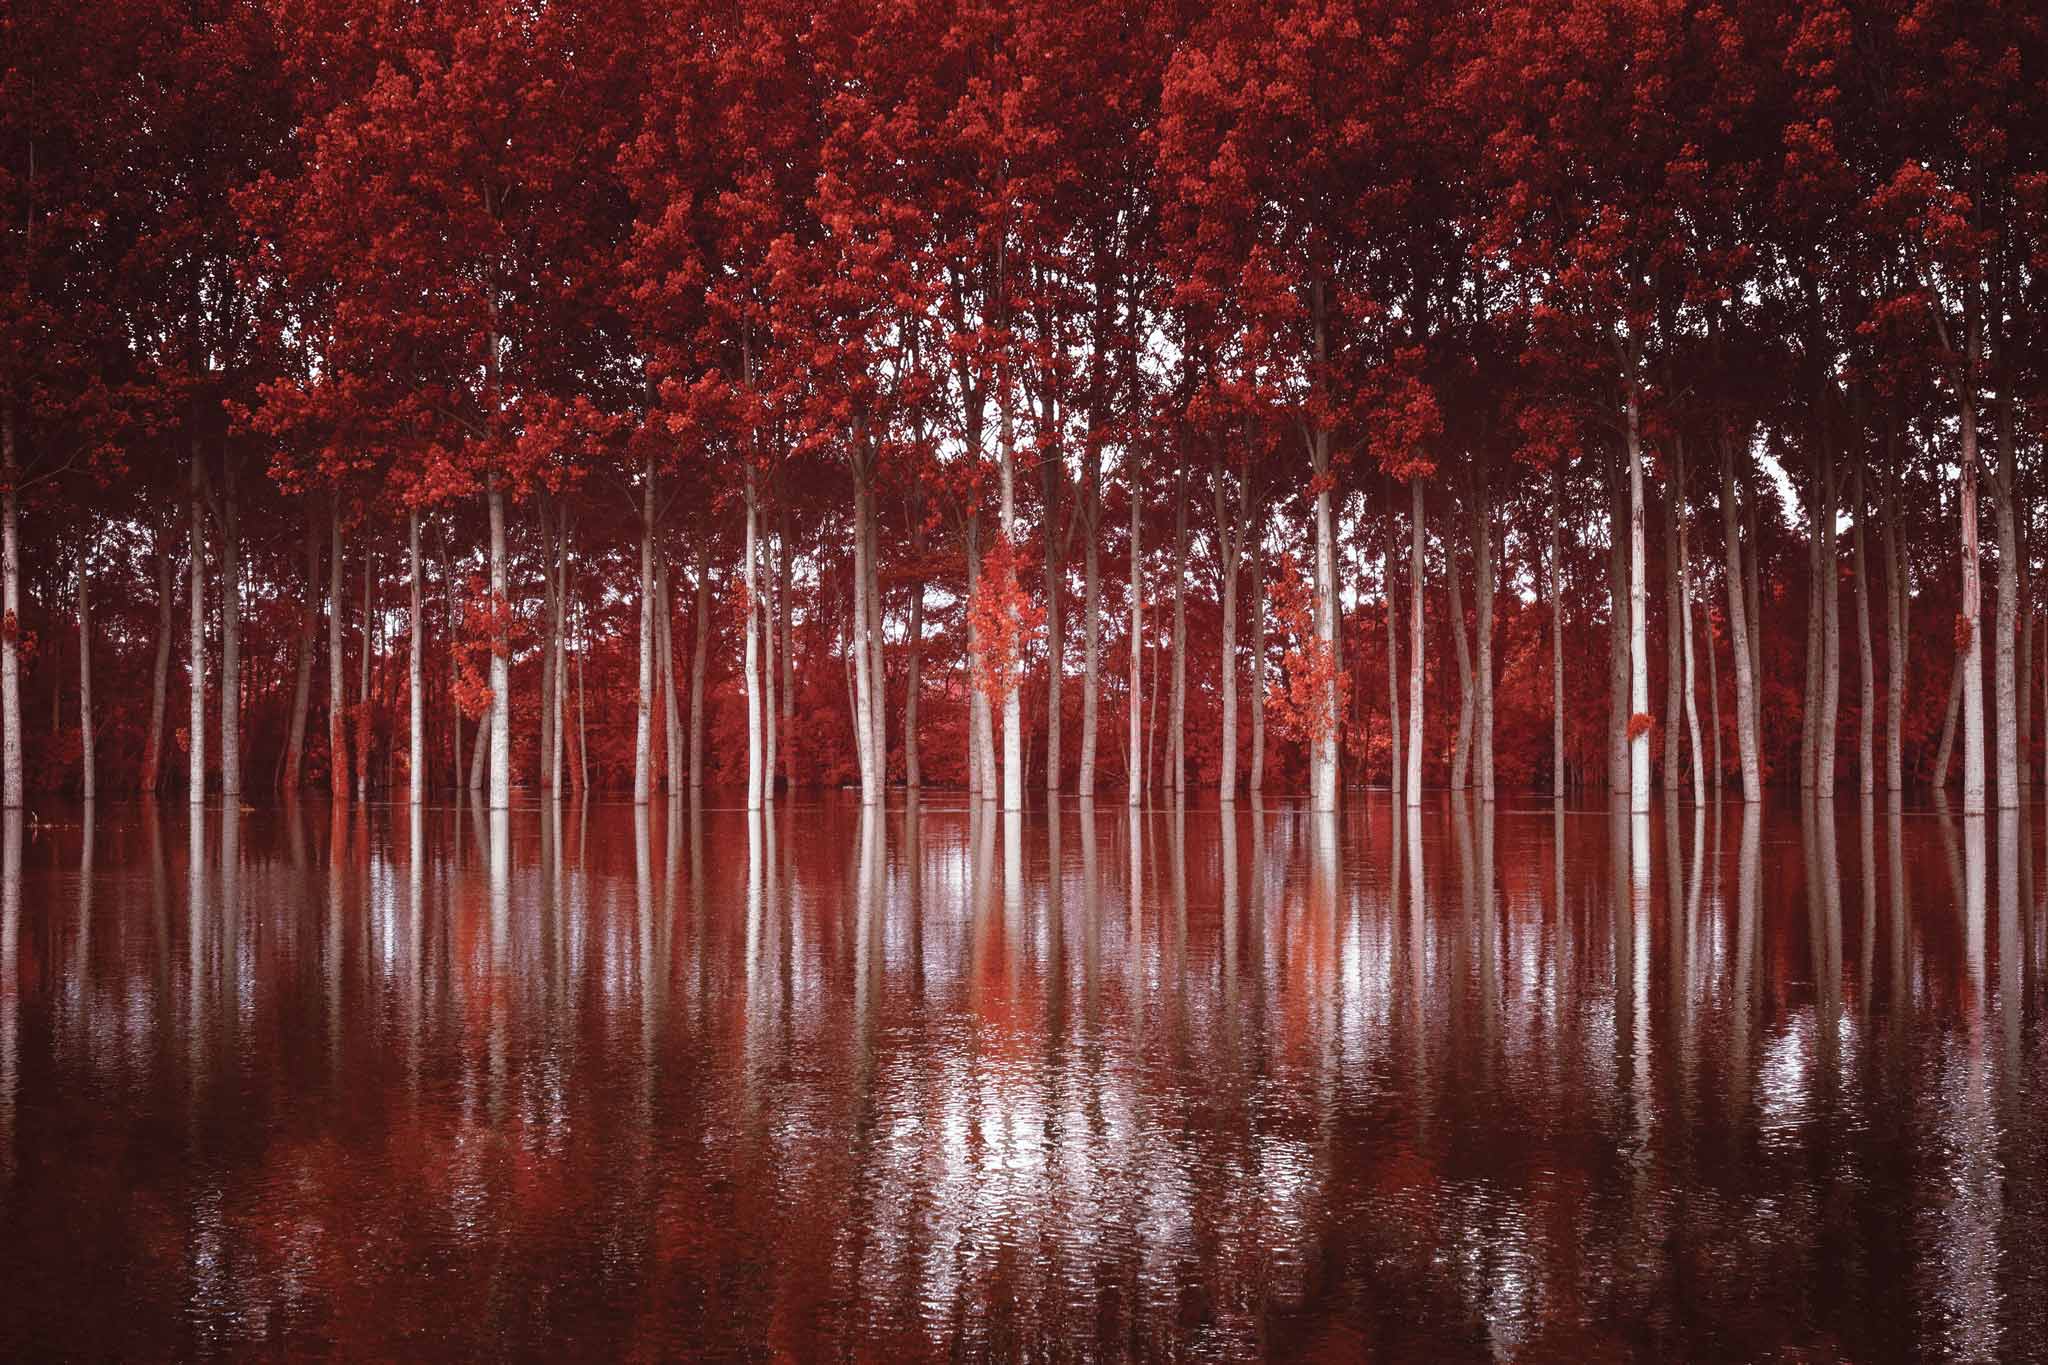 « Crues du Cher en rouge », 2016, 120 x 80 cm, infrarouge numérique, tirage argentique sur RC couleur satiné FUJI 250 g contrecollé sur PVC 10 mm, pelliculage brillant.